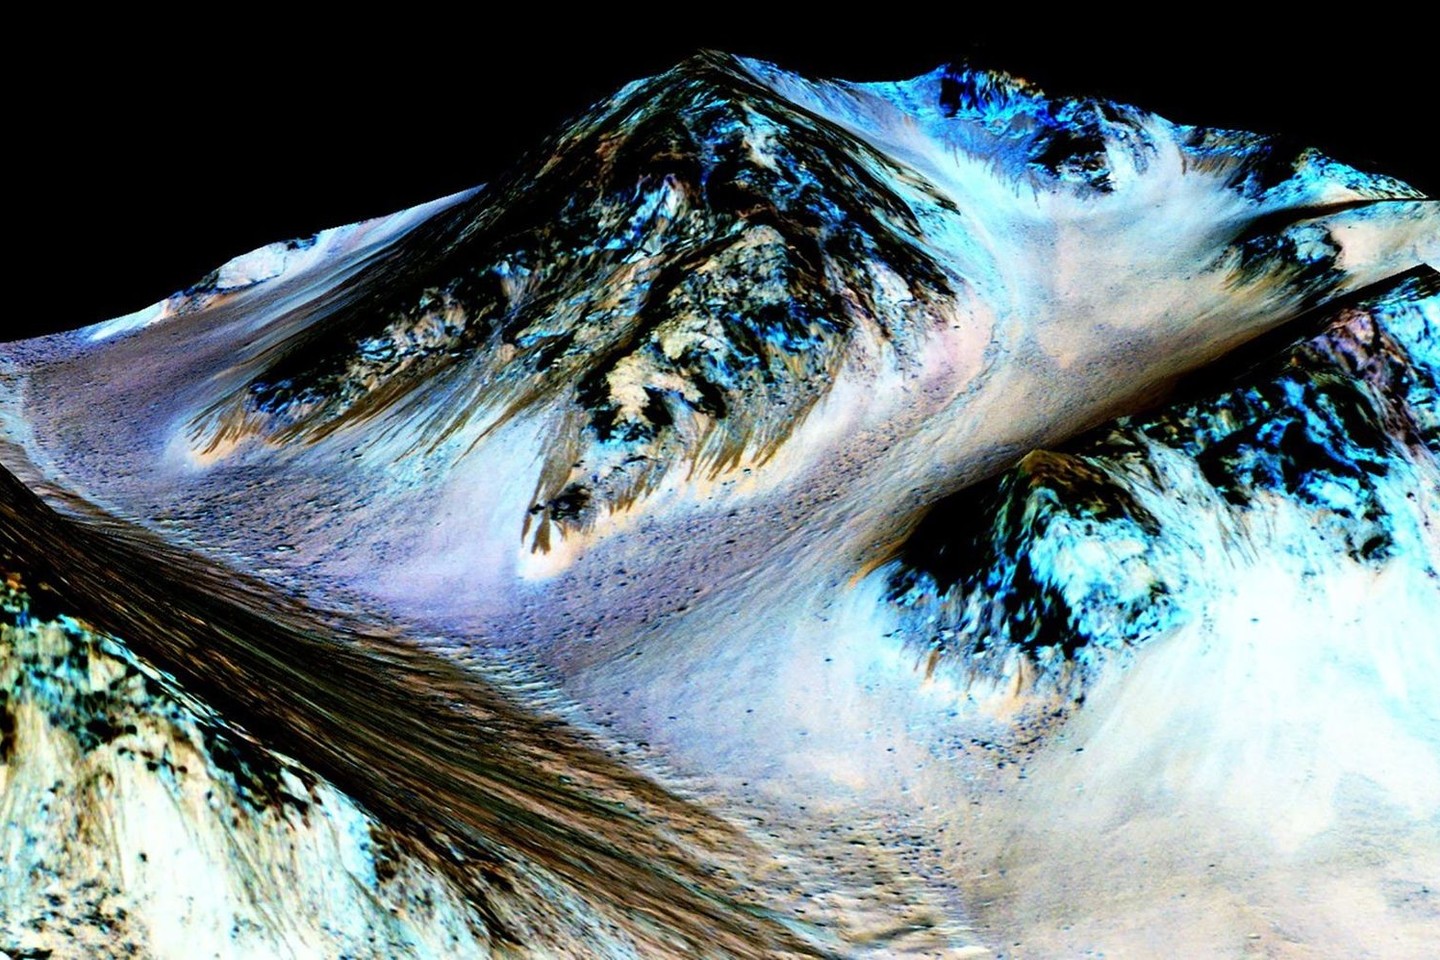 Skysto vandens egzistavimą Marse patvirtino spektrinės analizės duomenys.<br>Reuters/Scanpix nuotr.